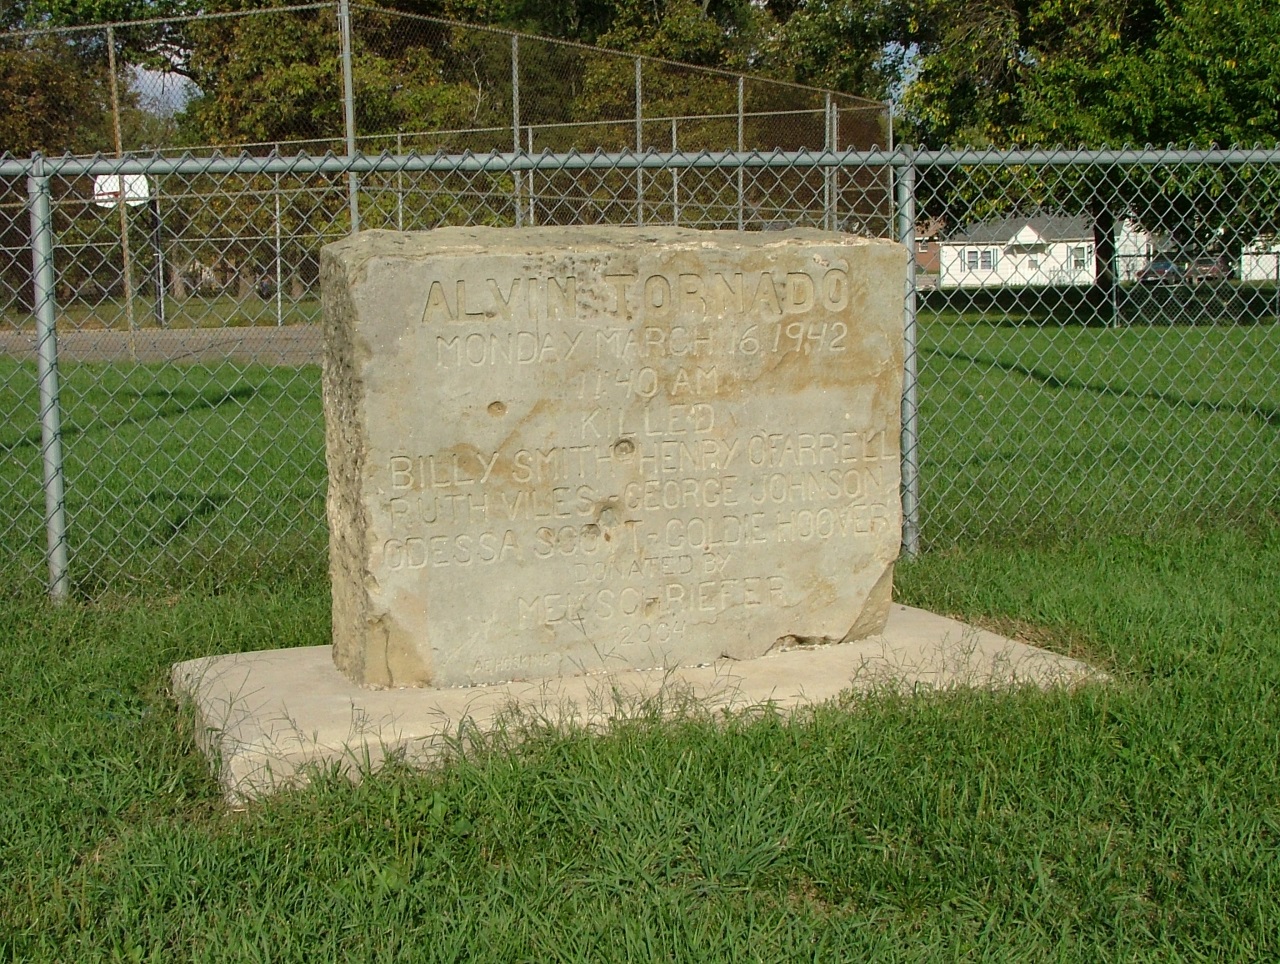 Commemorative marker of Alvin tornado. Photo credit: Wikimedia Commons